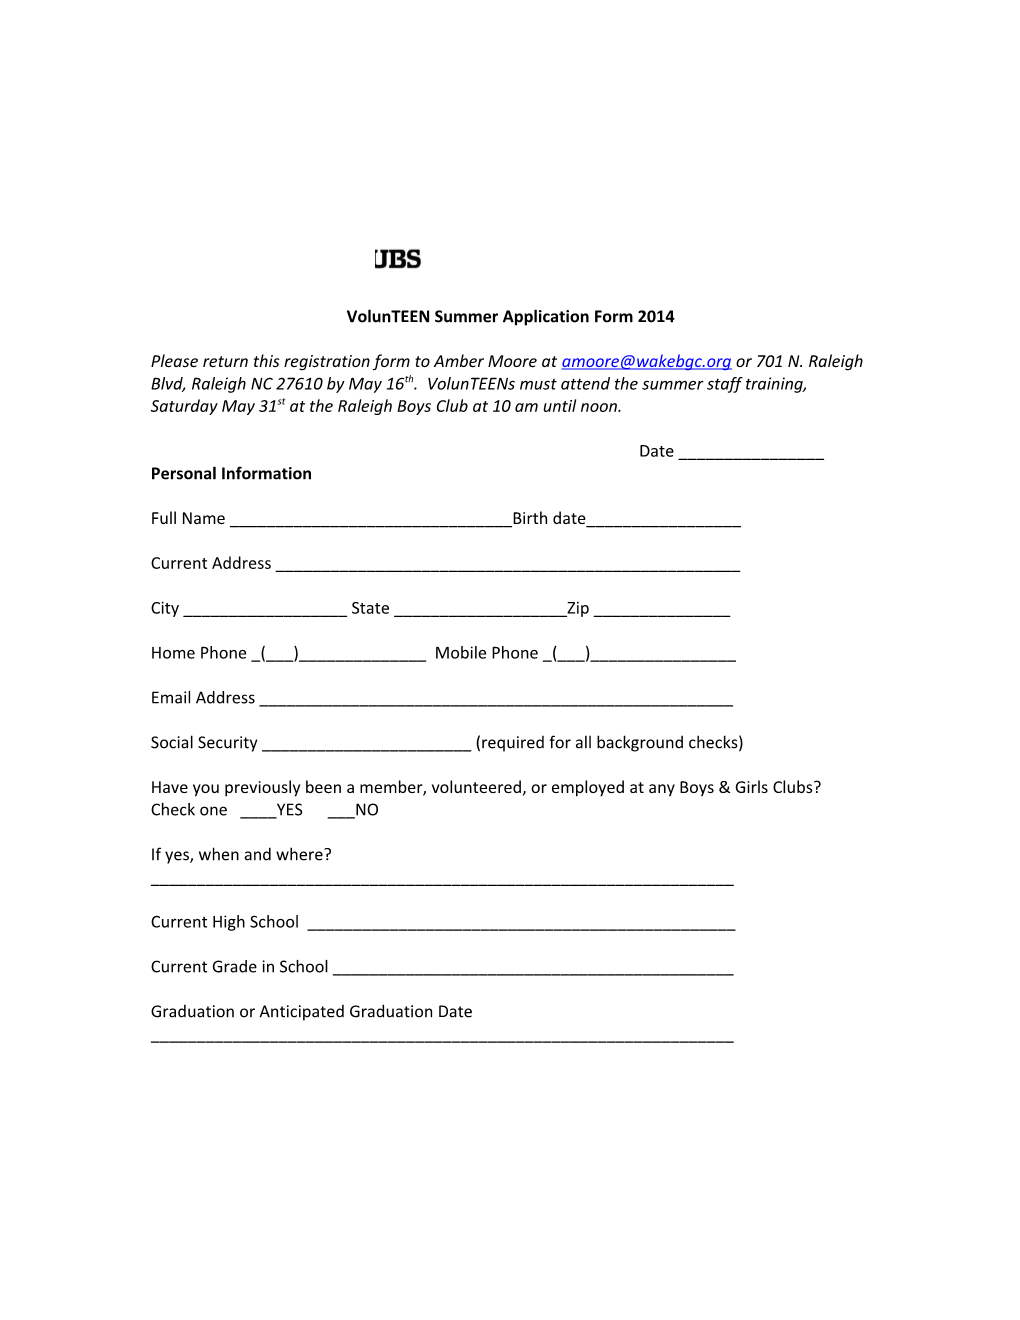 Volunteen Summer Application Form 2014